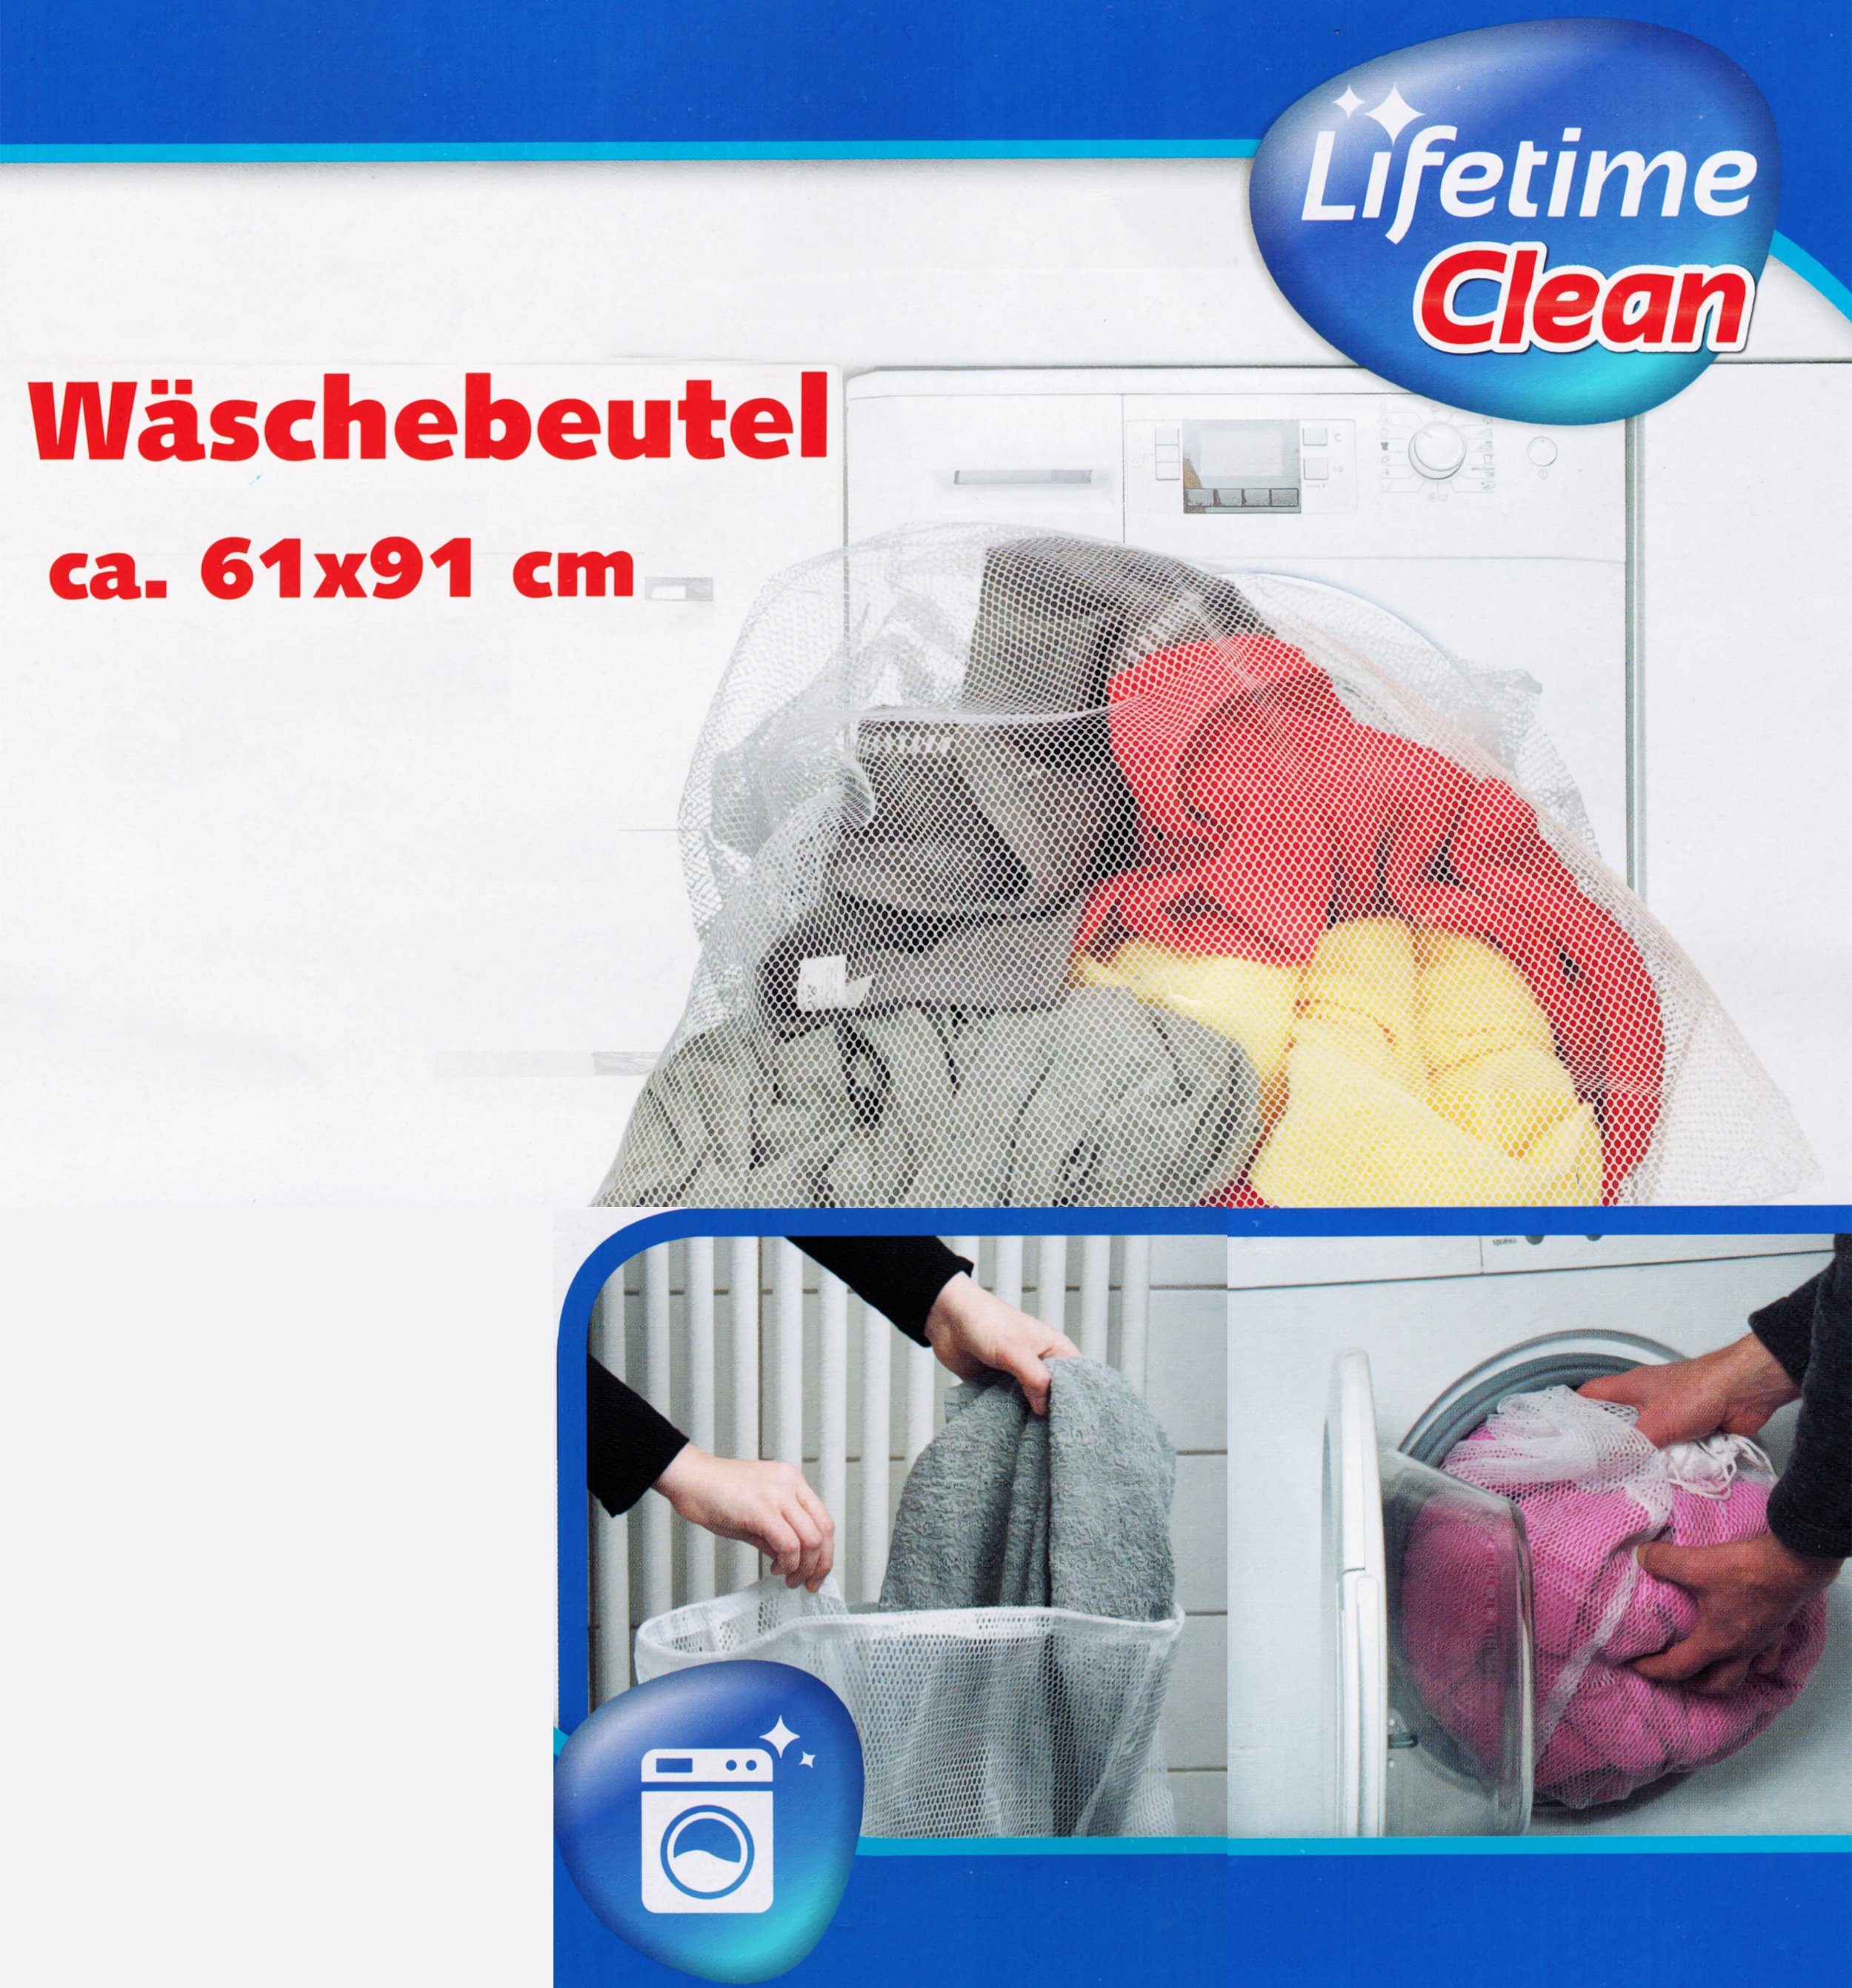 Wäschenetz WÄSCHENETZ 61x91cm Weiss mit Zugkordel Wäschebeutel Wäsche Netz Beutel Sack 12